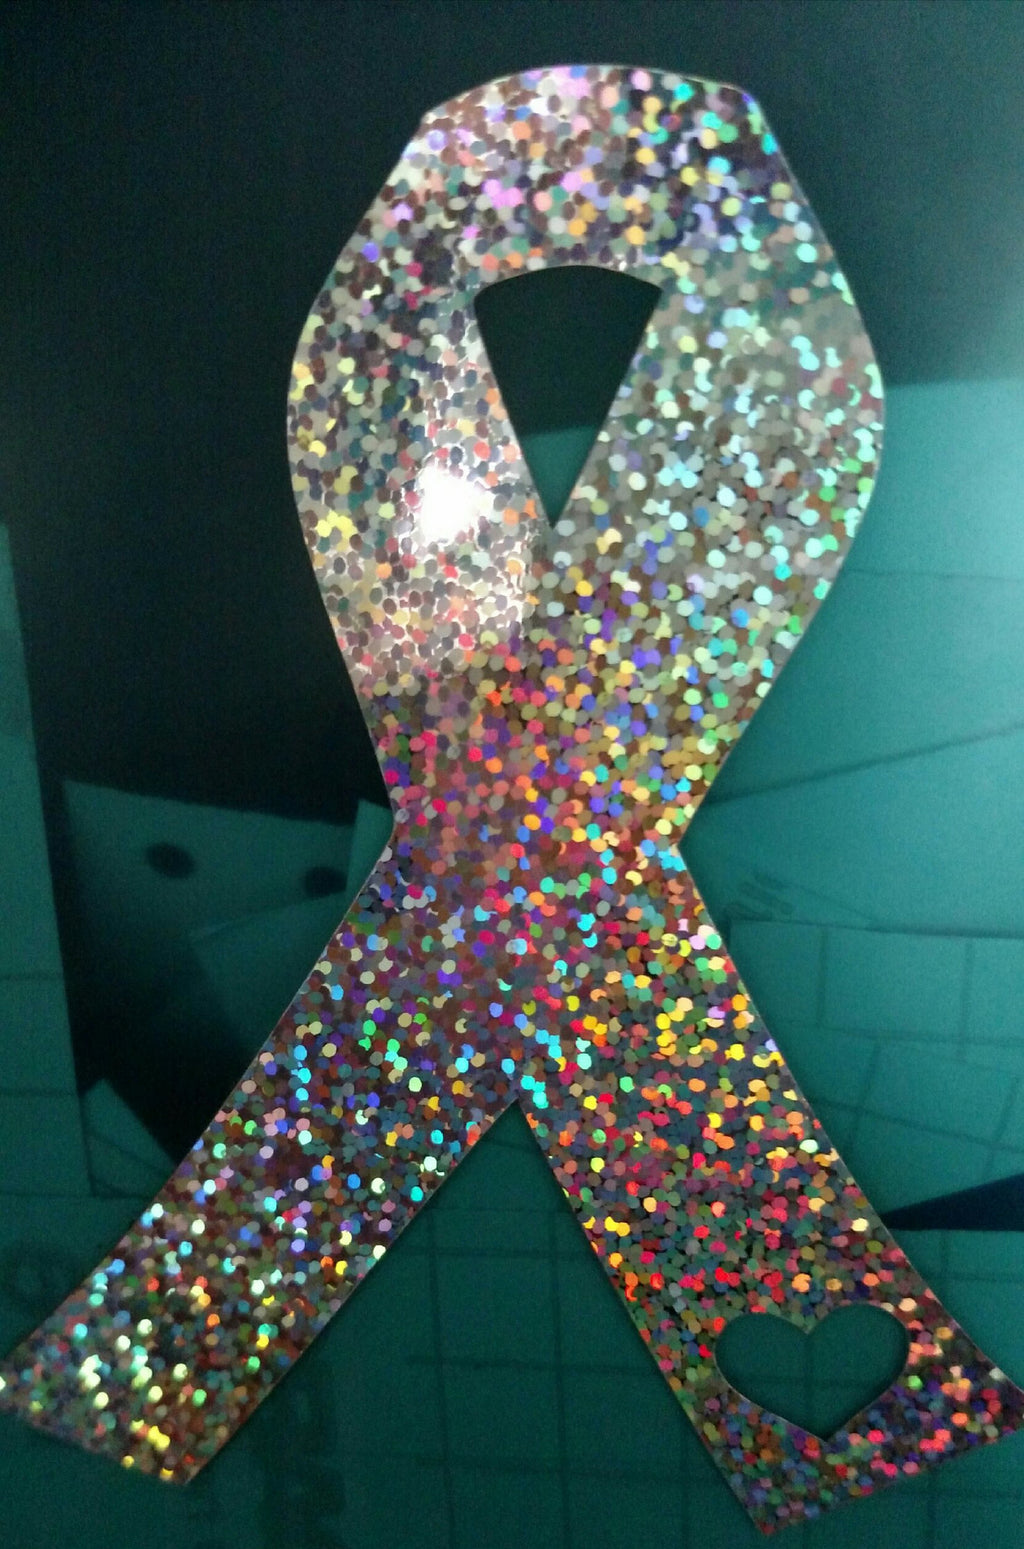 Cancer Awareness Ribbon Decal